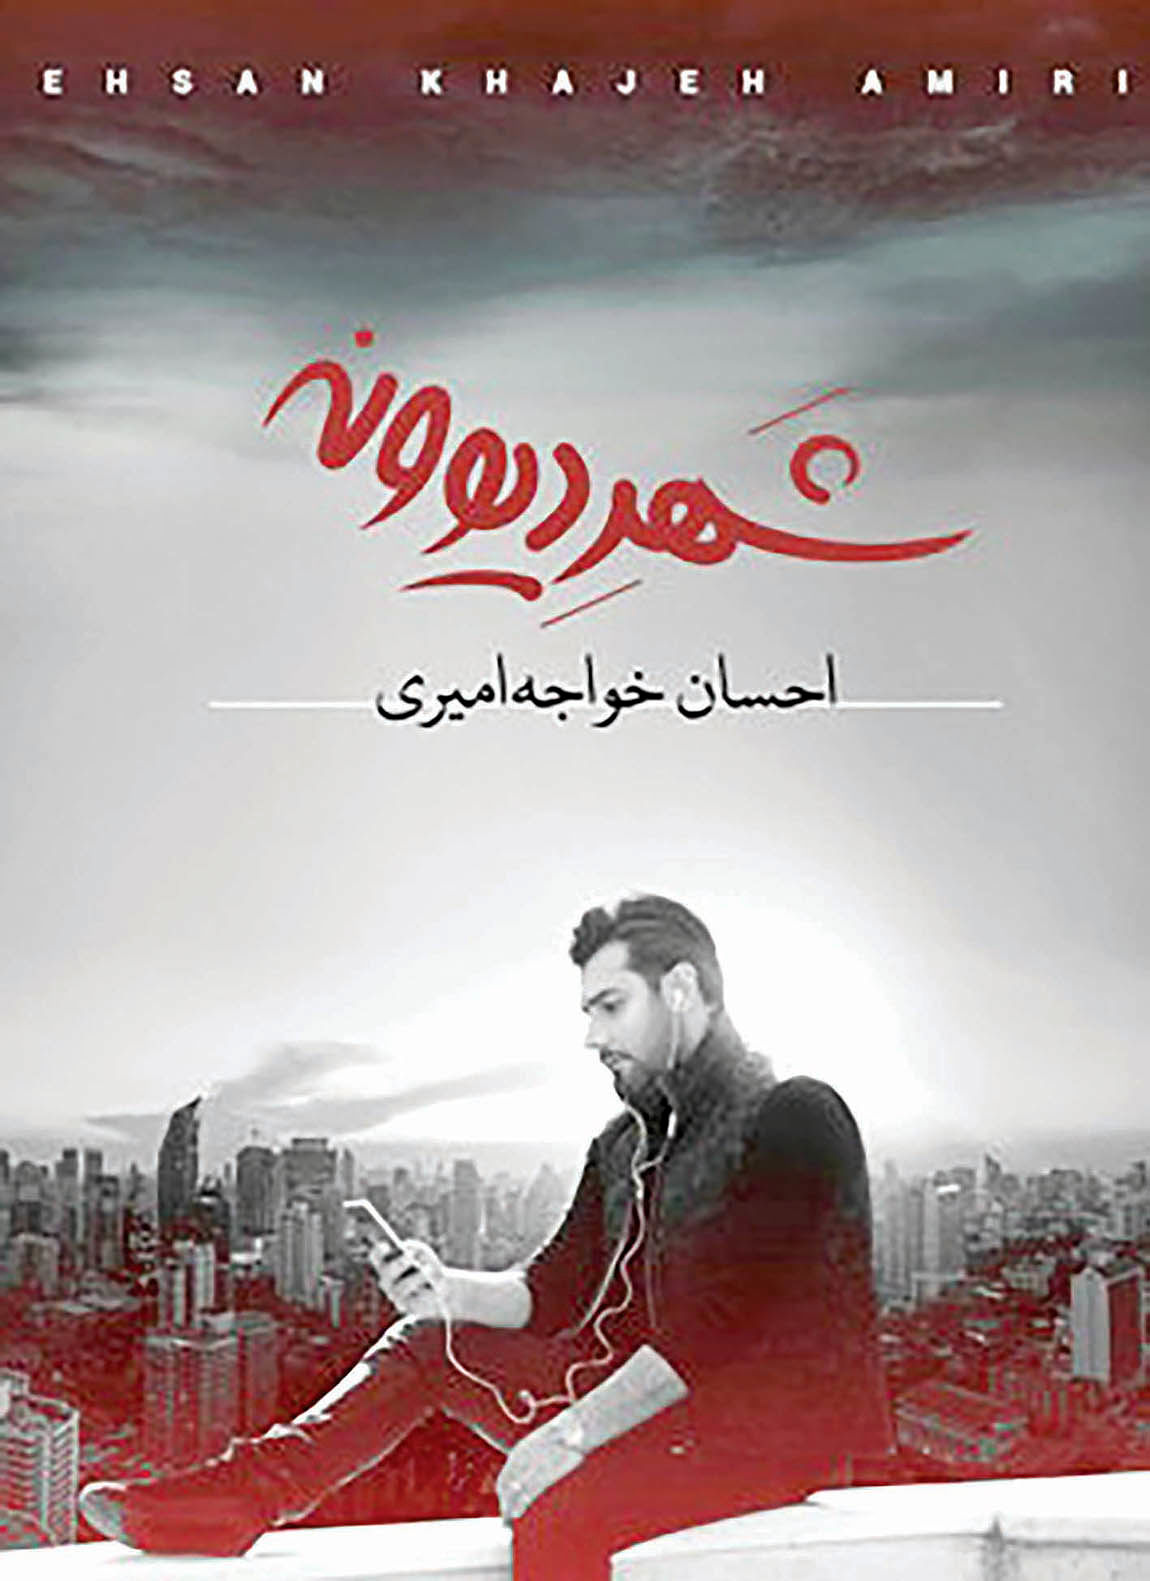 انتشار آلبوم جدید احسان خواجه امیری در هفته آینده